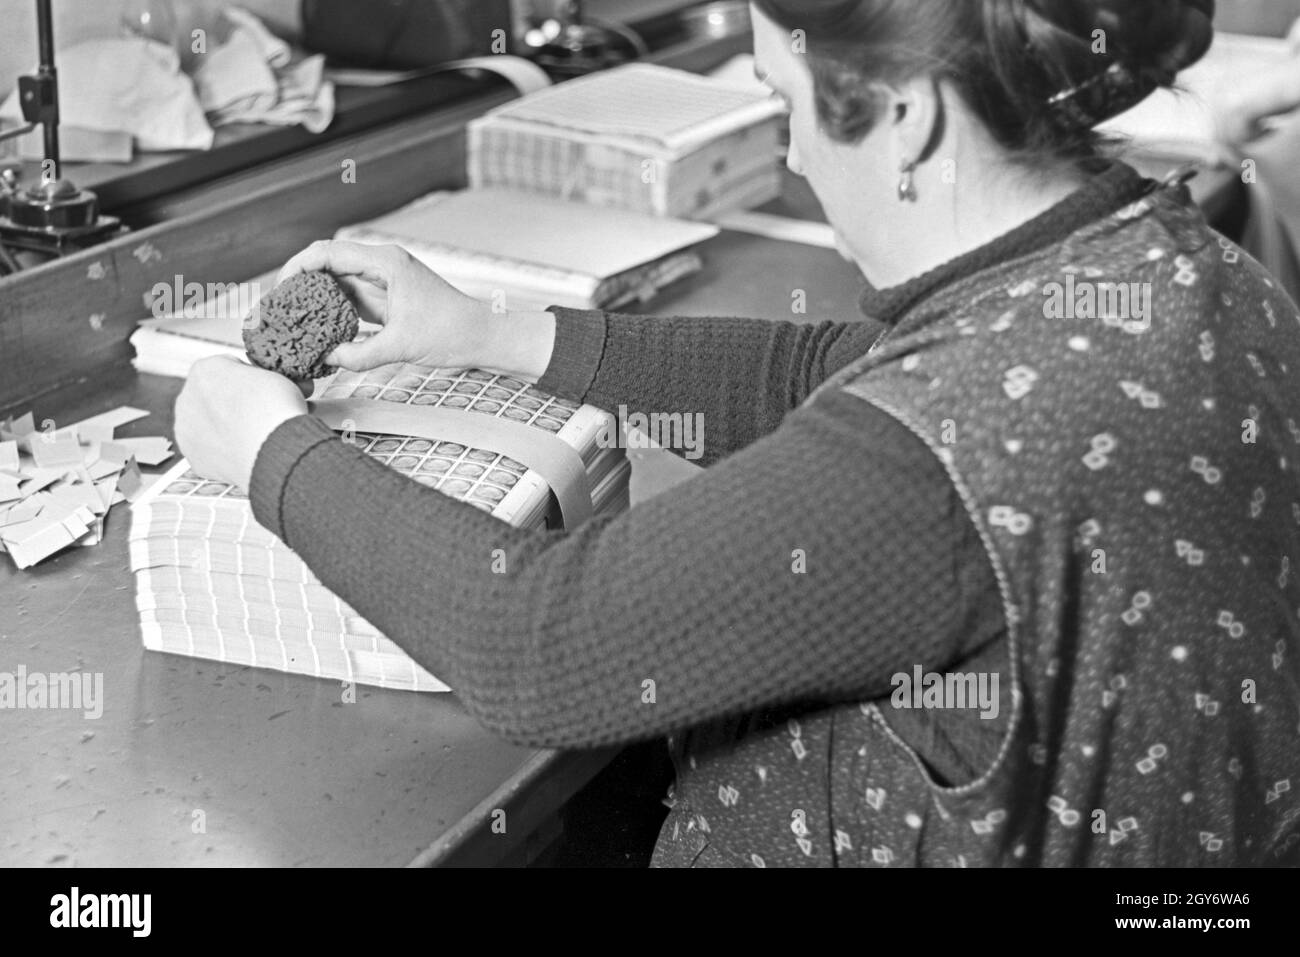 Eine Mitarbeiterin der Reichsdruckerei kommissioniert Hindenburg Dauerserie Briefmarken in Bögen in Berlin, Deutschland 1930er Jahr. A female staff member of the Reichsdruckerei printing plant in Berlin commissioning Hindenburg stamp sheets, Germany 1930s. Stock Photo